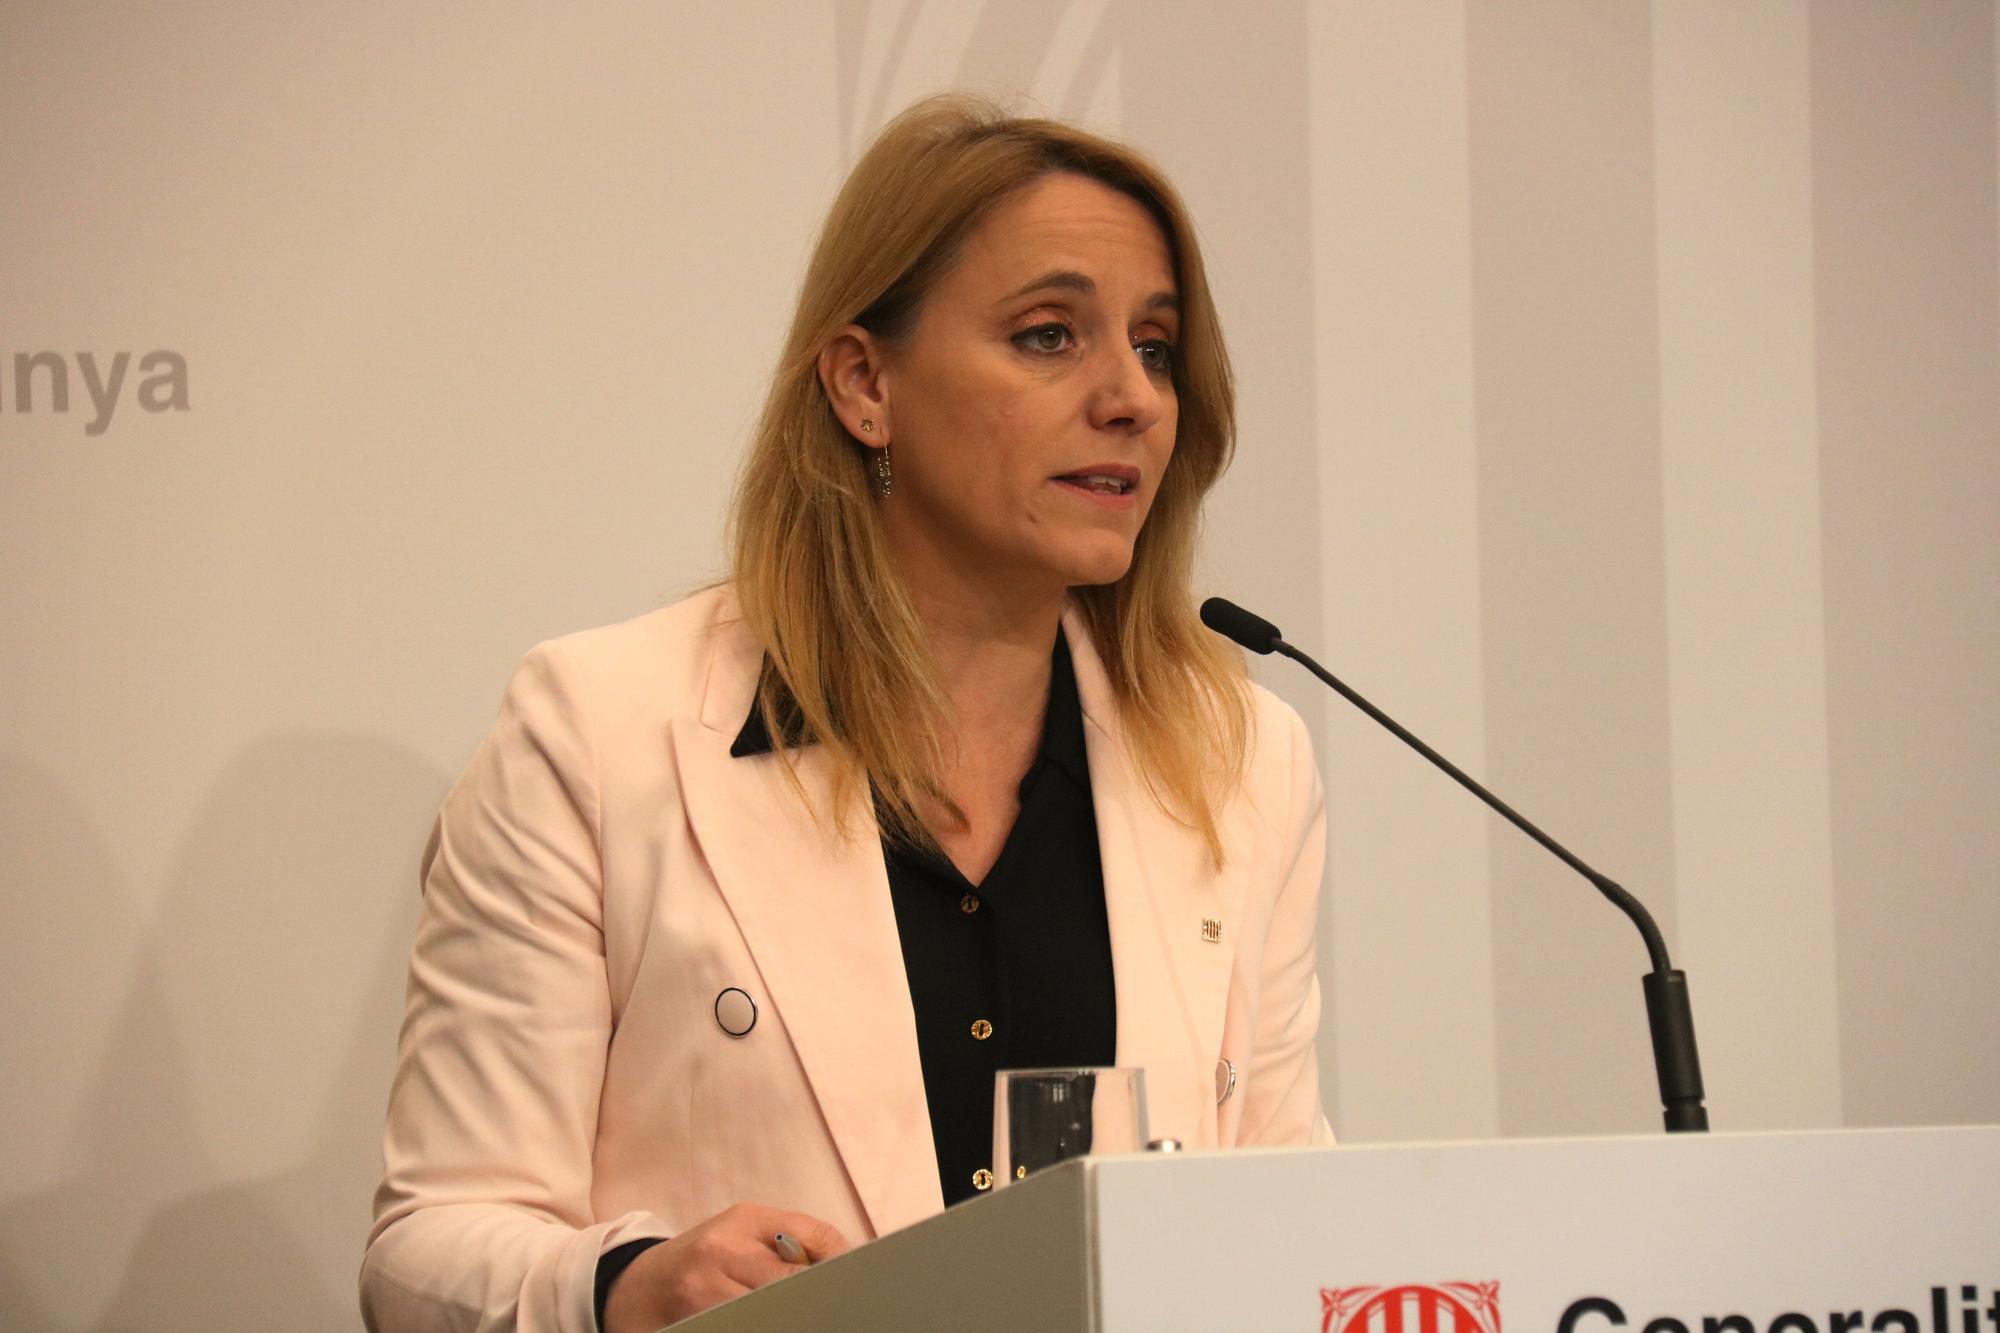 La consellera d'Economia i Hisenda, Natàlia Mas Guix, a la roda de premsa presentant el balanç del Pla de prevenció i reducció del frau fiscal 2019-2022, al Districte Administratiu.